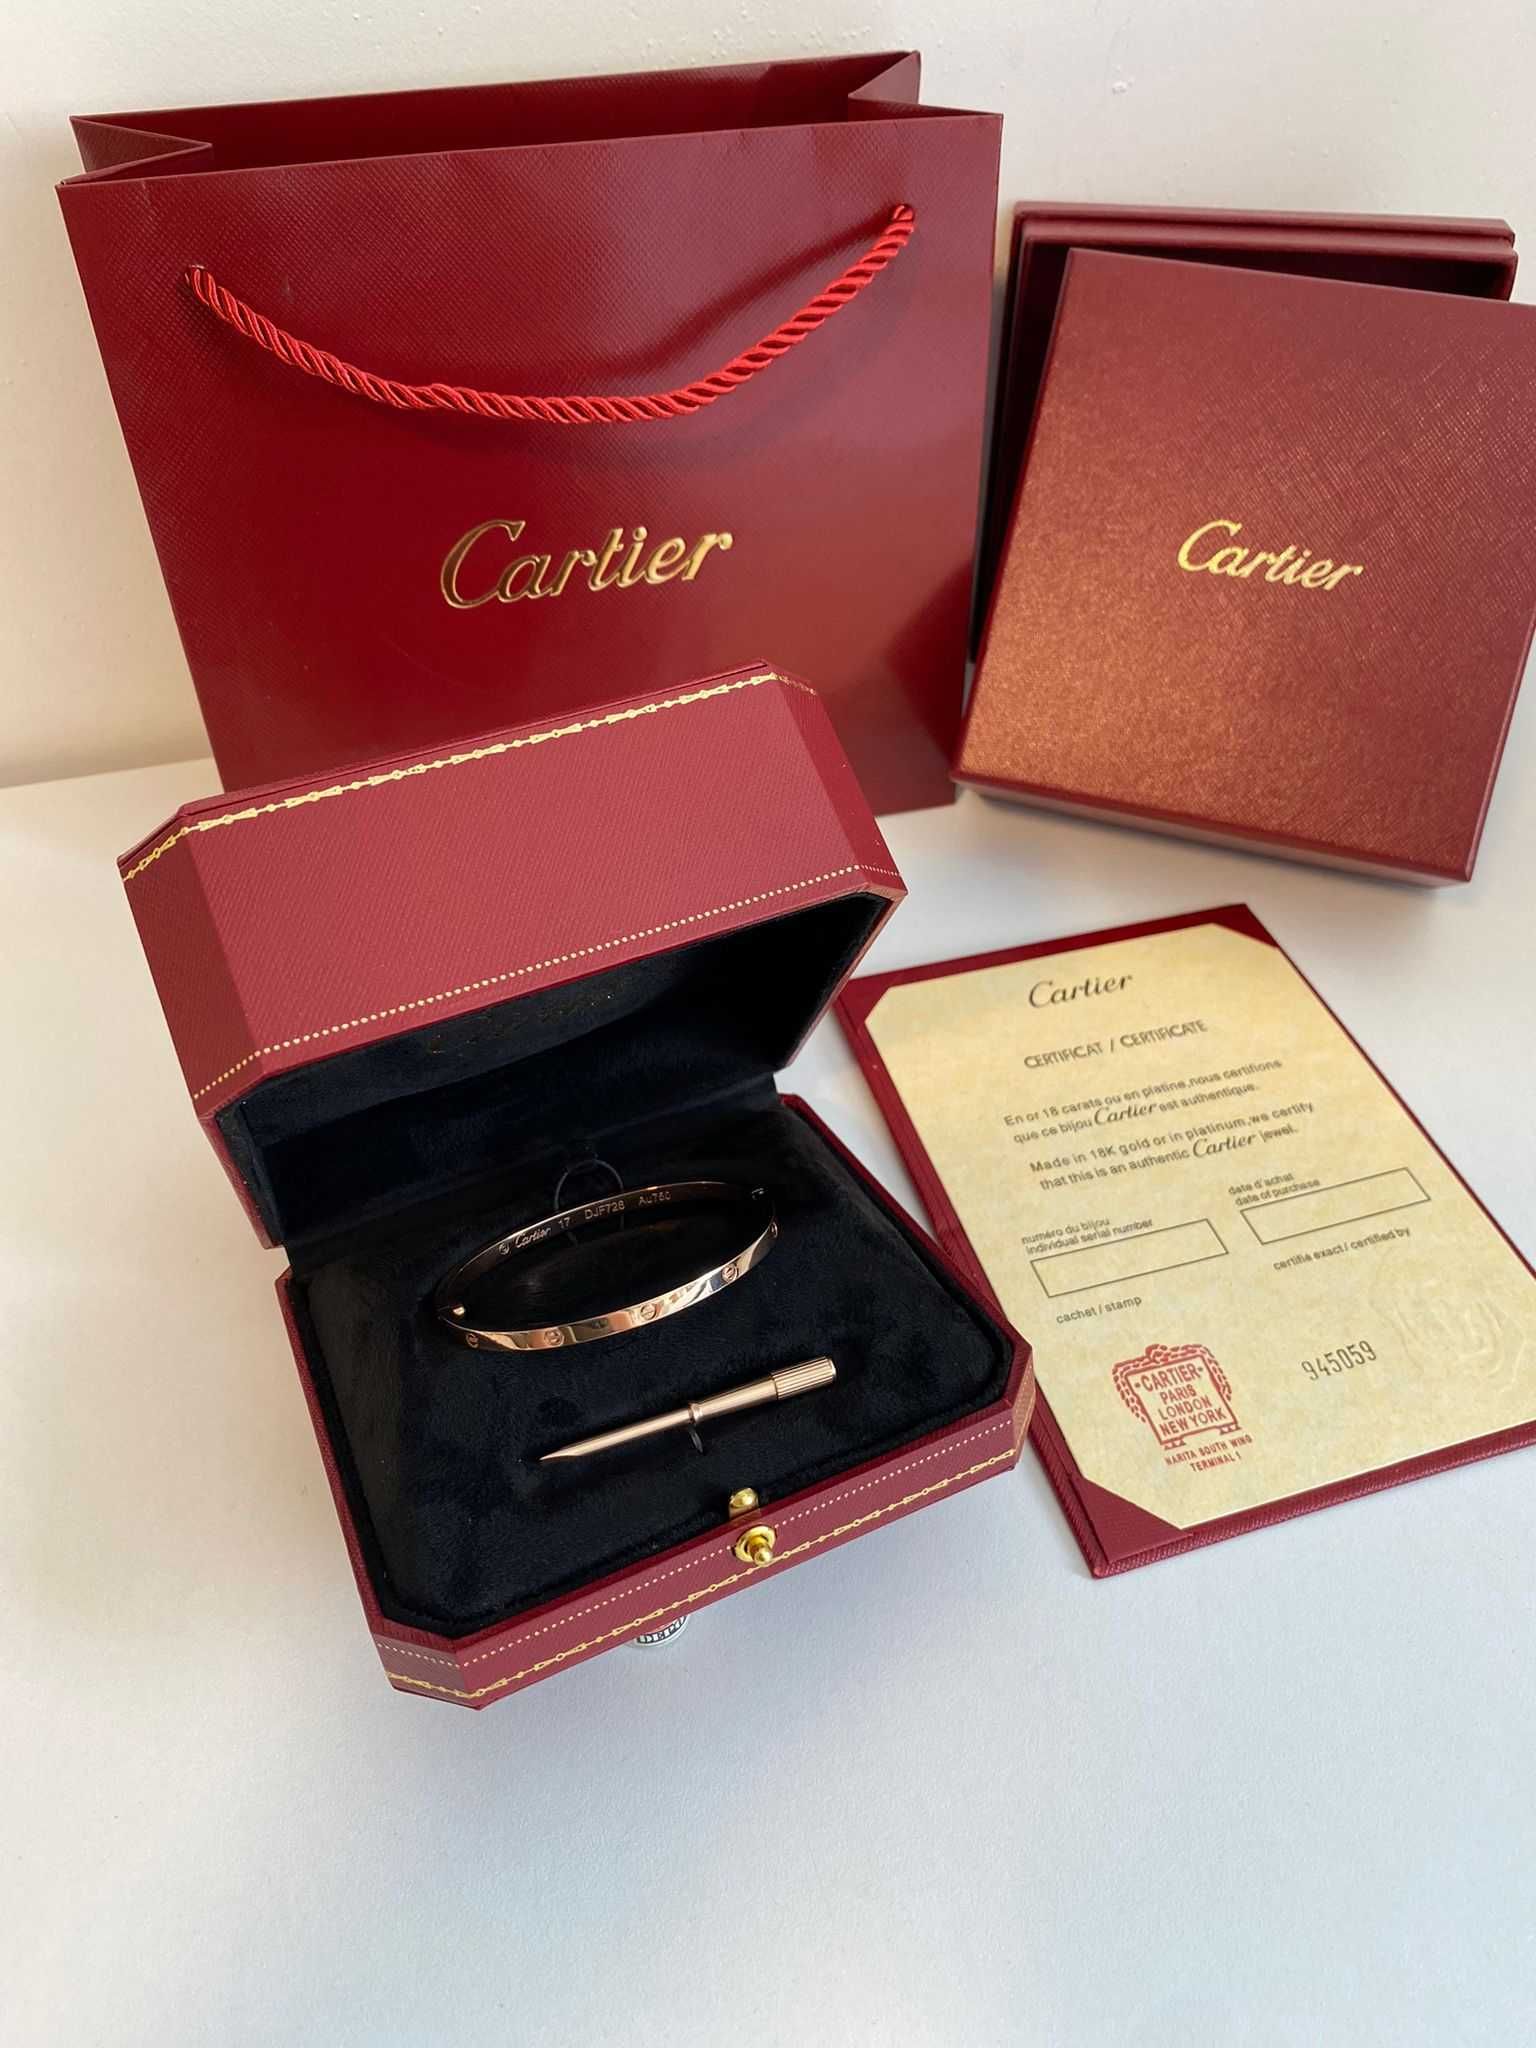 Brățară Cartier LOVE Slim 17 Rose Gold 18K cu Cutie